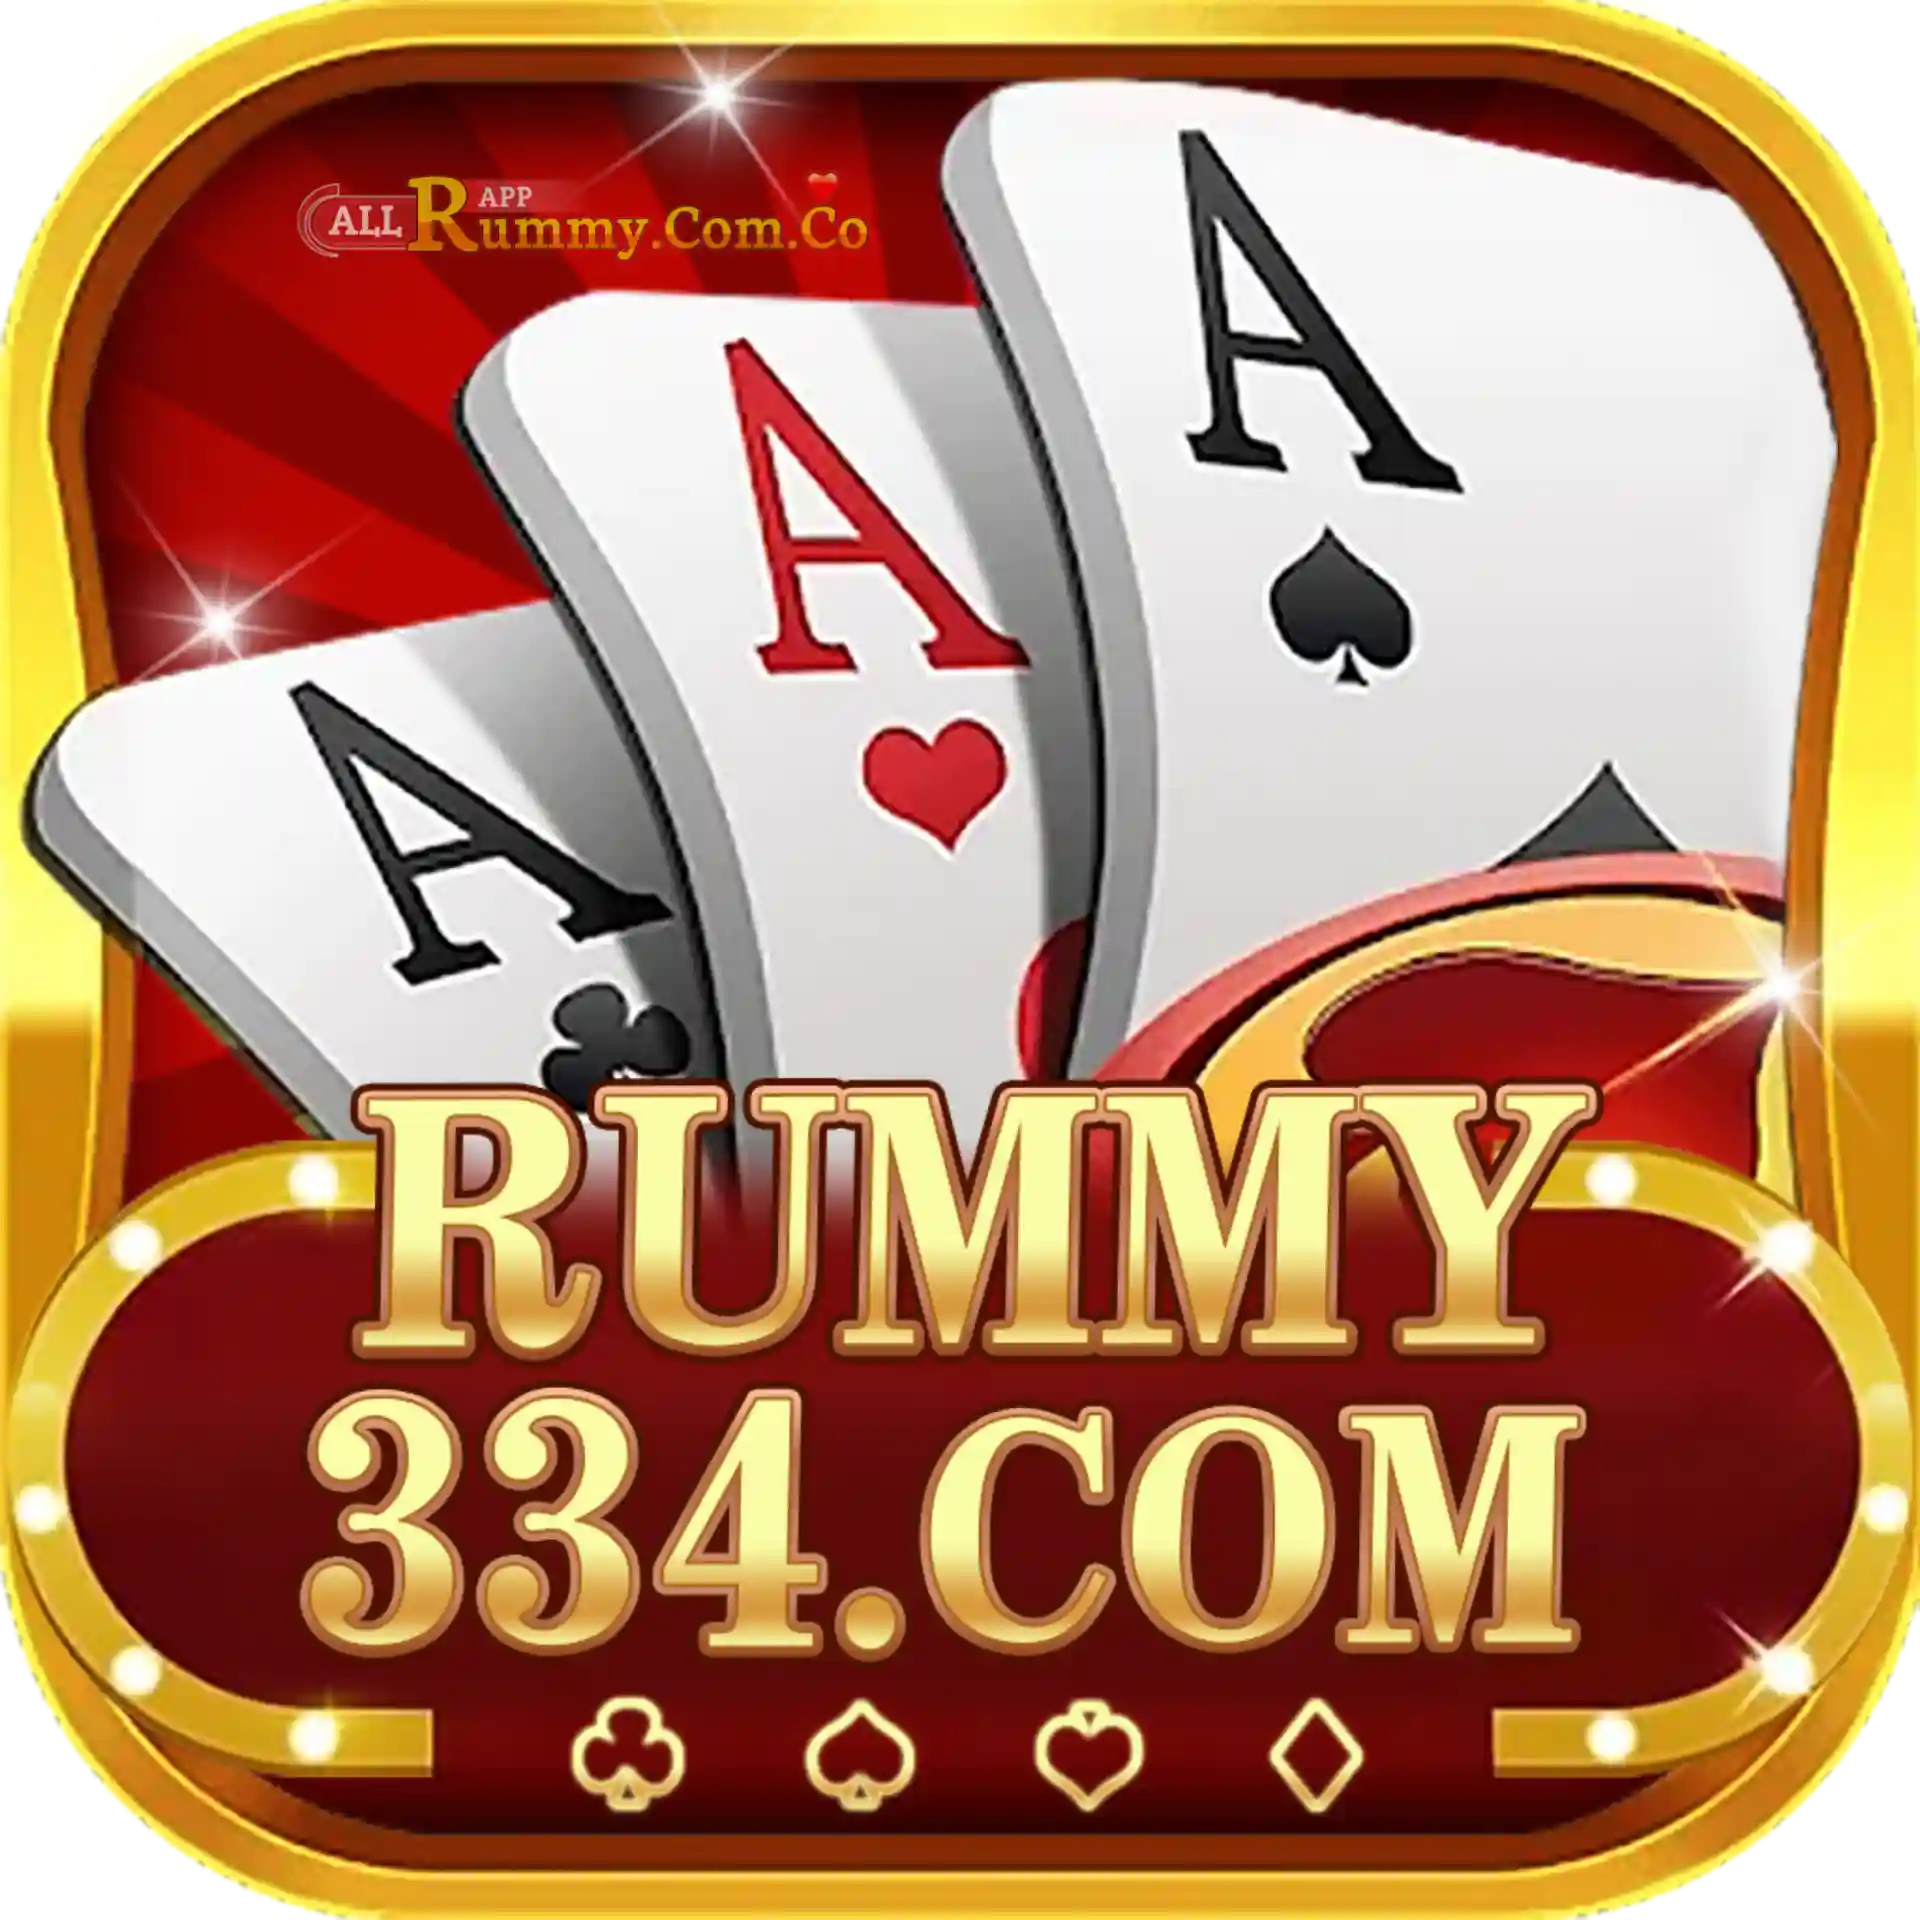 Rummy 334- All Rummy App - Rummy All App - All Rummy Store